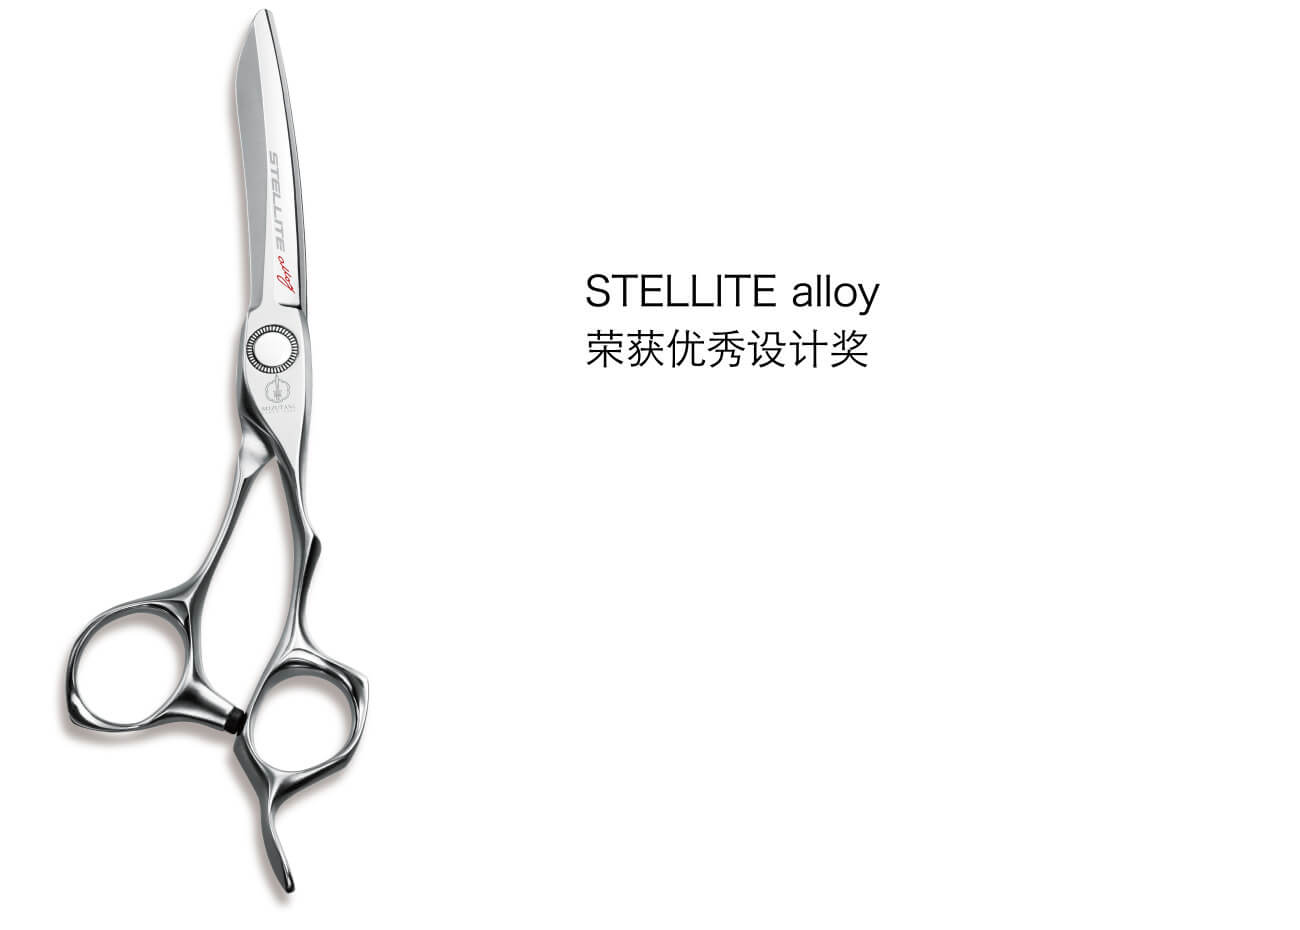 STELLITE alloy 荣获优秀设计奖